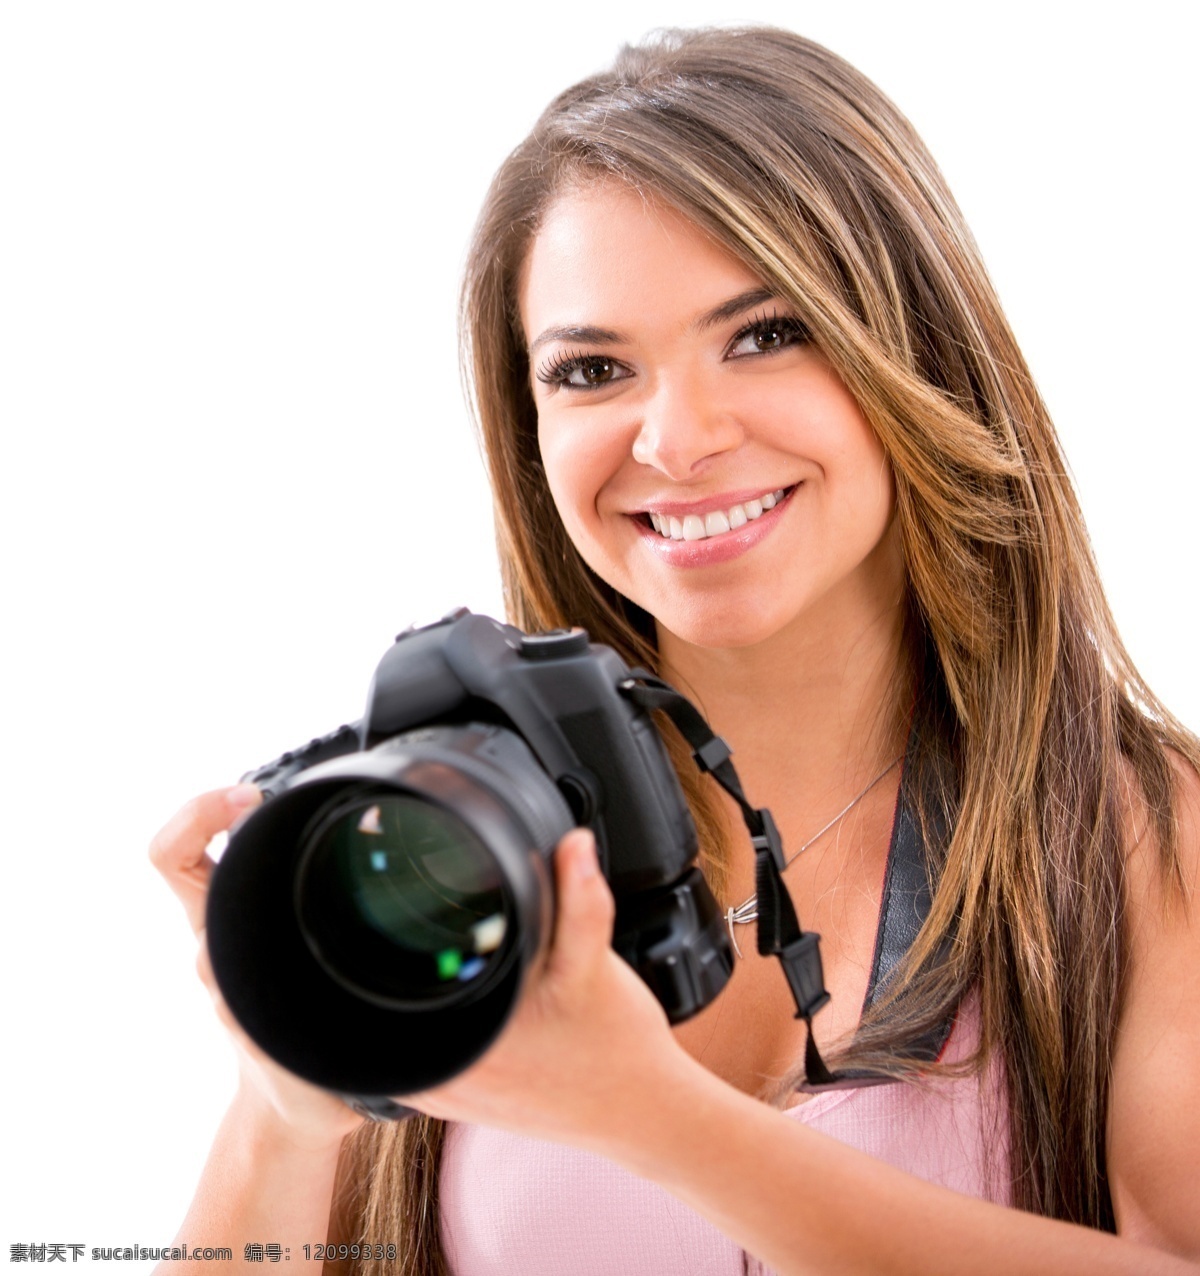 单反 相机 拍照 外国 美女图片 美女 外国美女 性感美女 数码相机 照相机 单反相机 人物摄影 人物图片